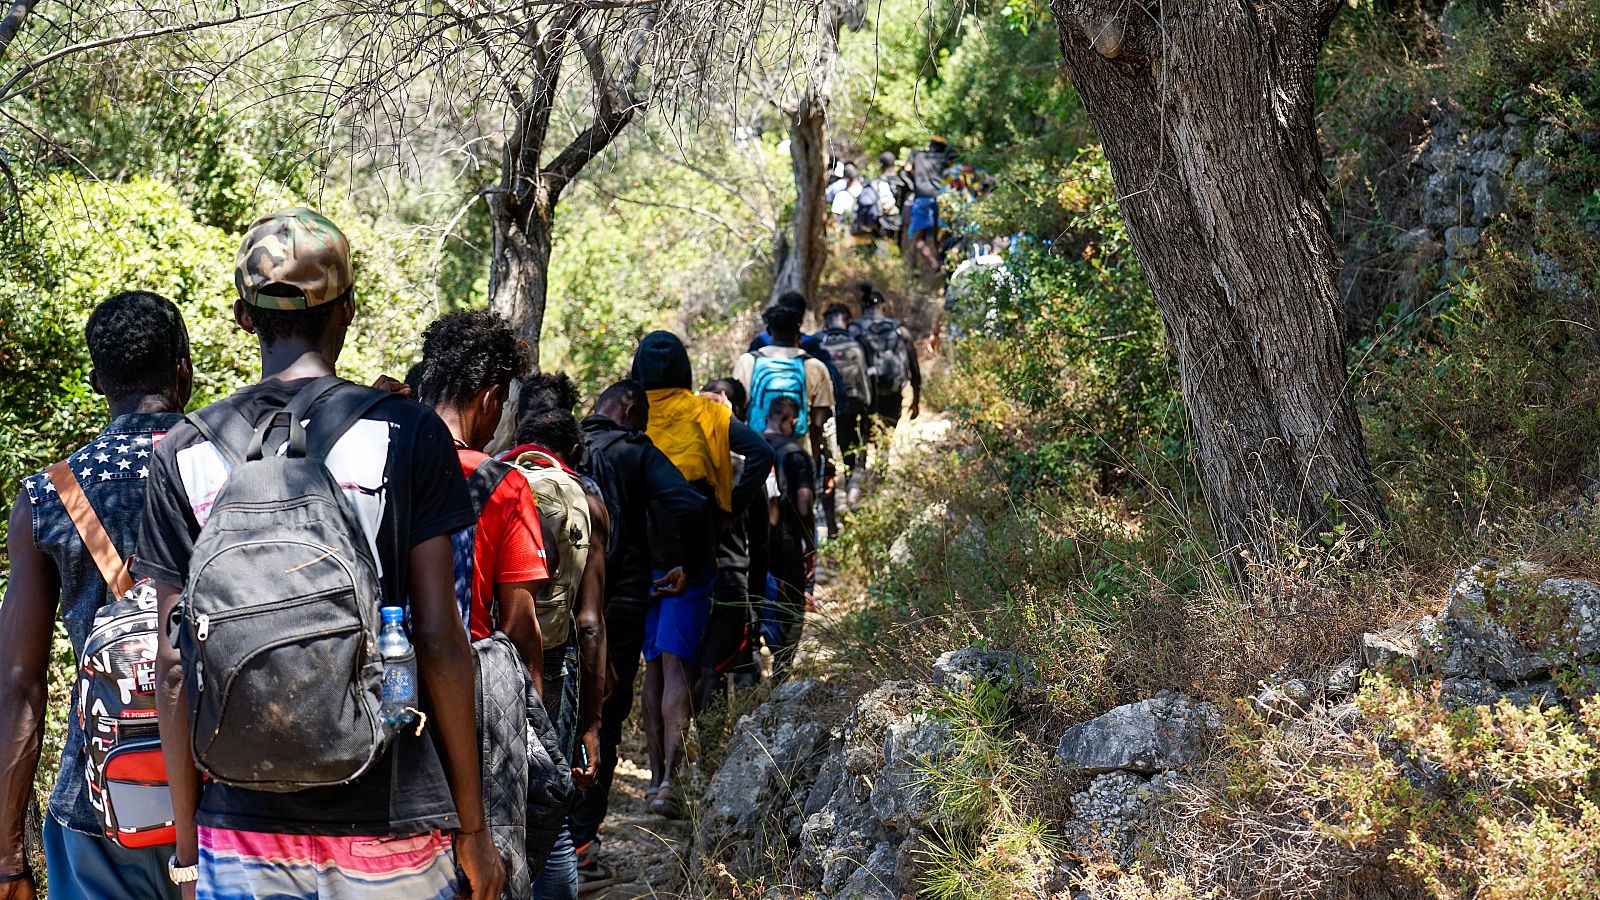 Plano medio de personas recién llegadas a la isla de Samos, Grecia, caminando por un sendero rocoso